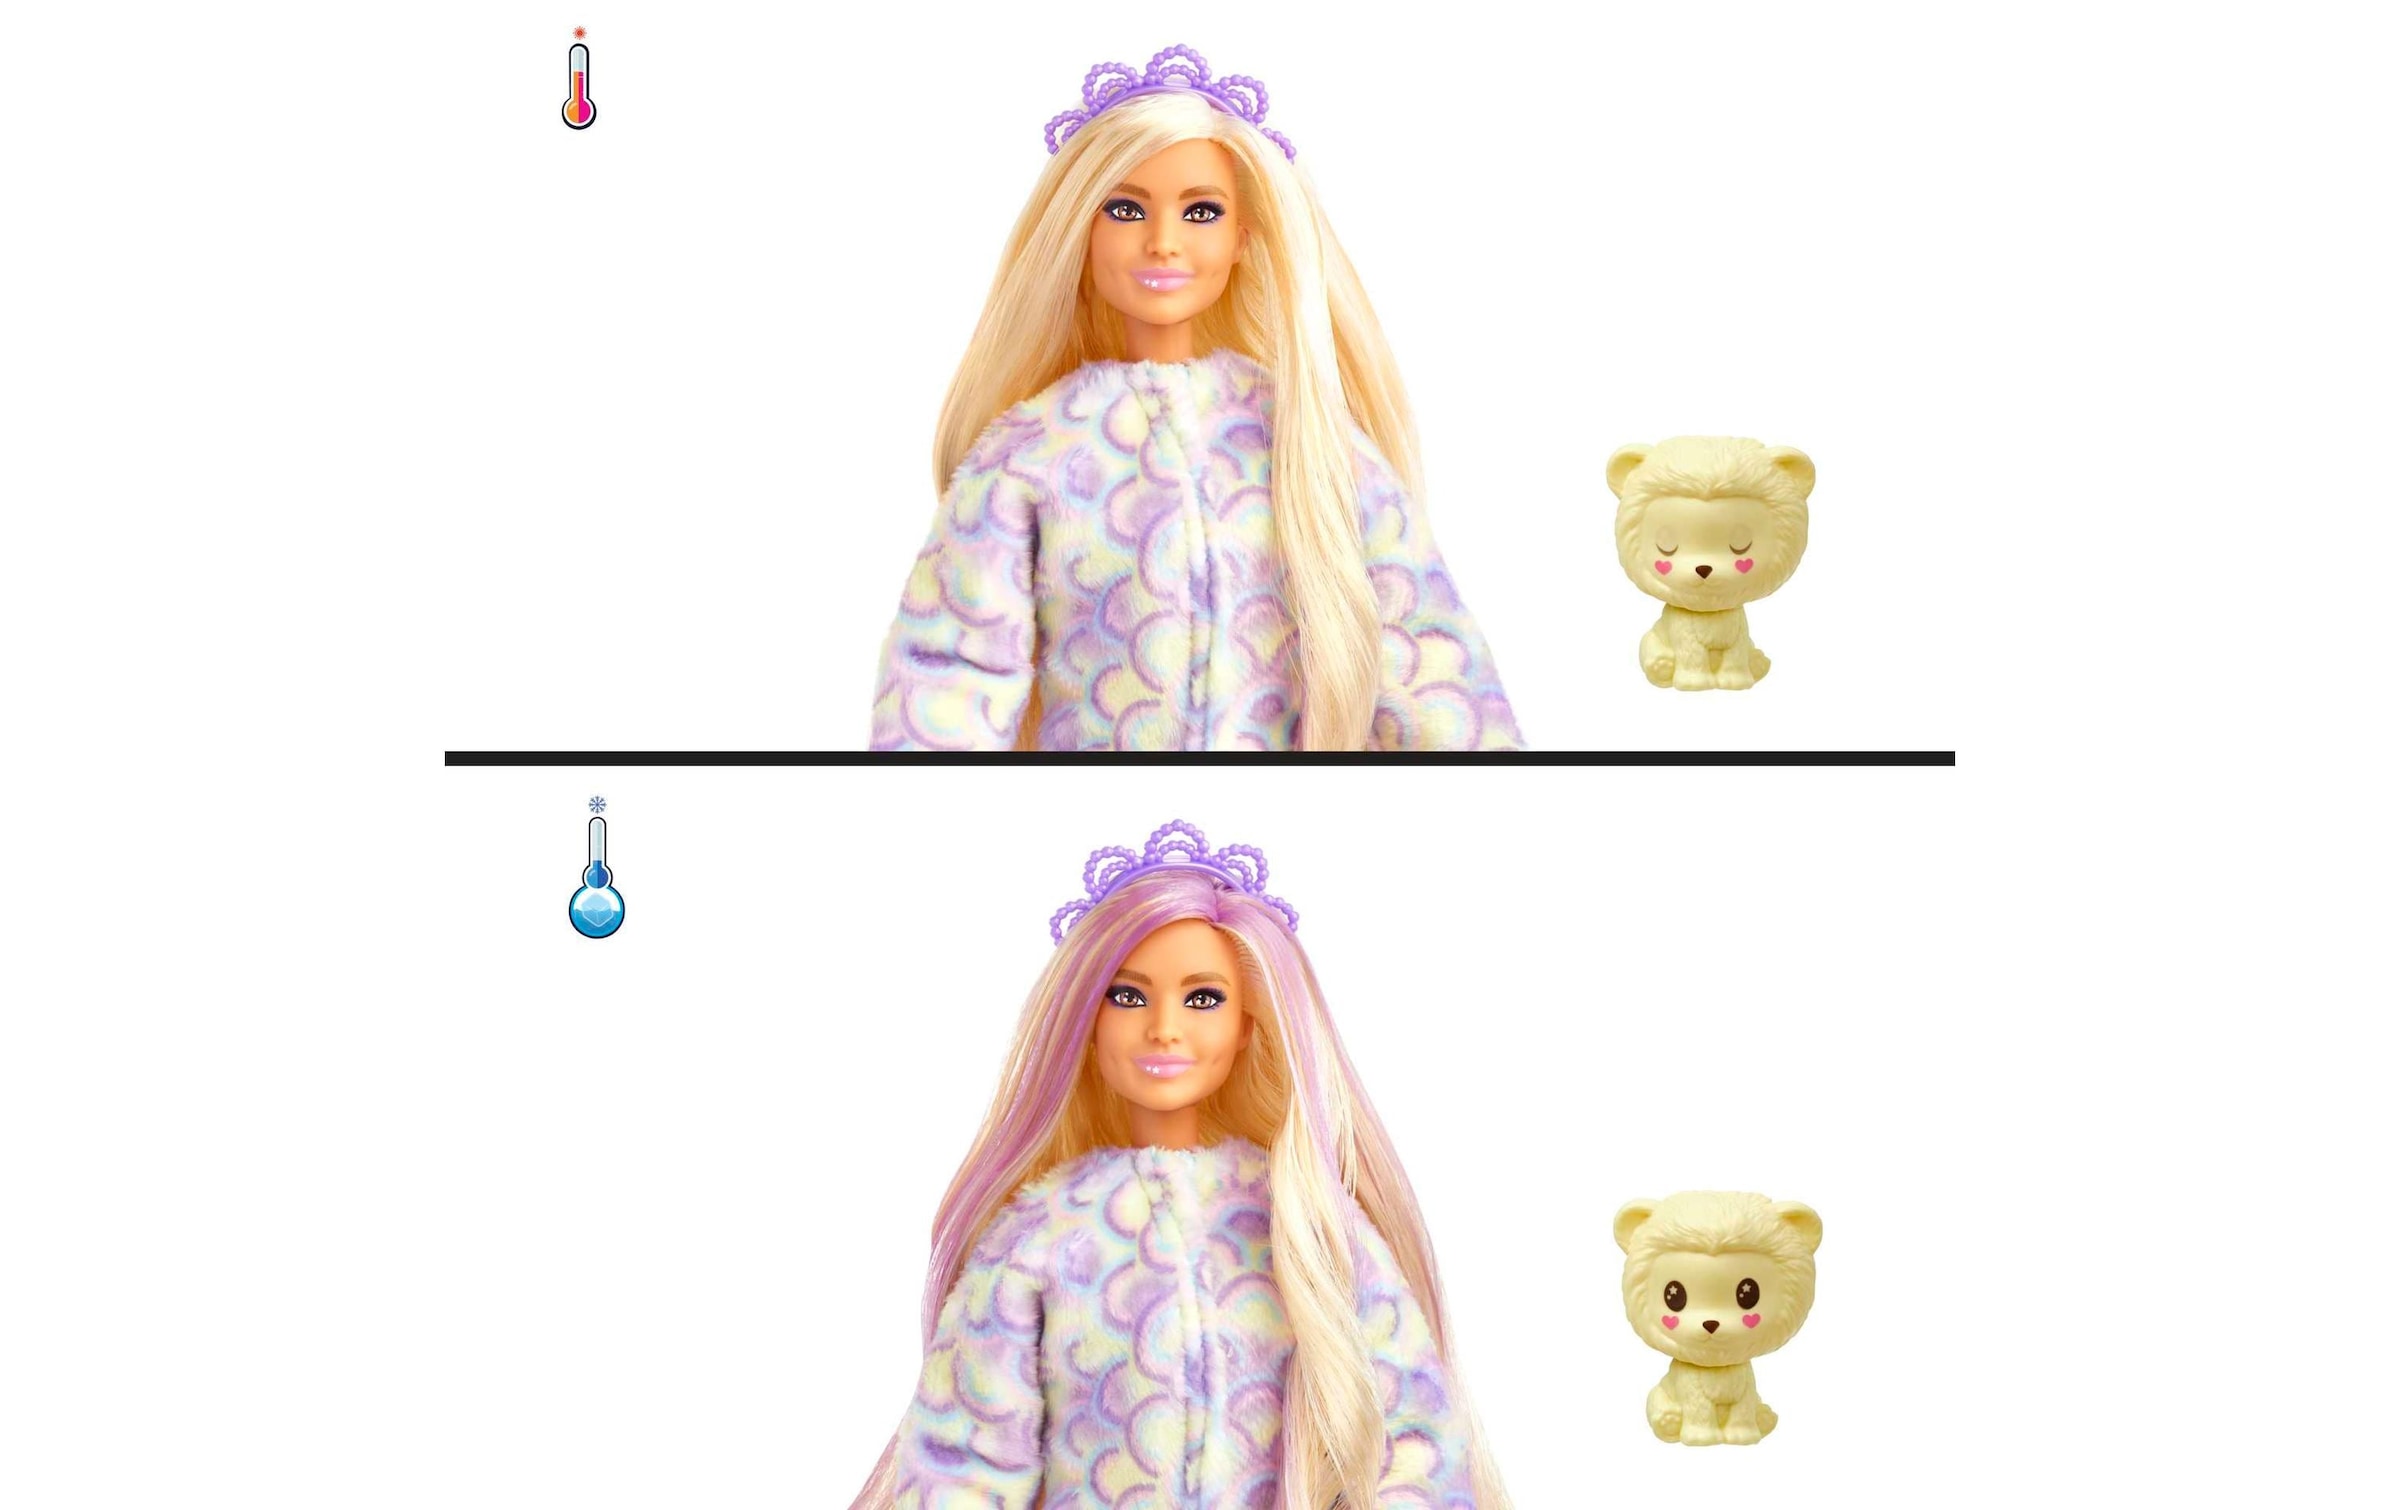 Barbie Anziehpuppe »Cutie Reveal Cozy Cute«